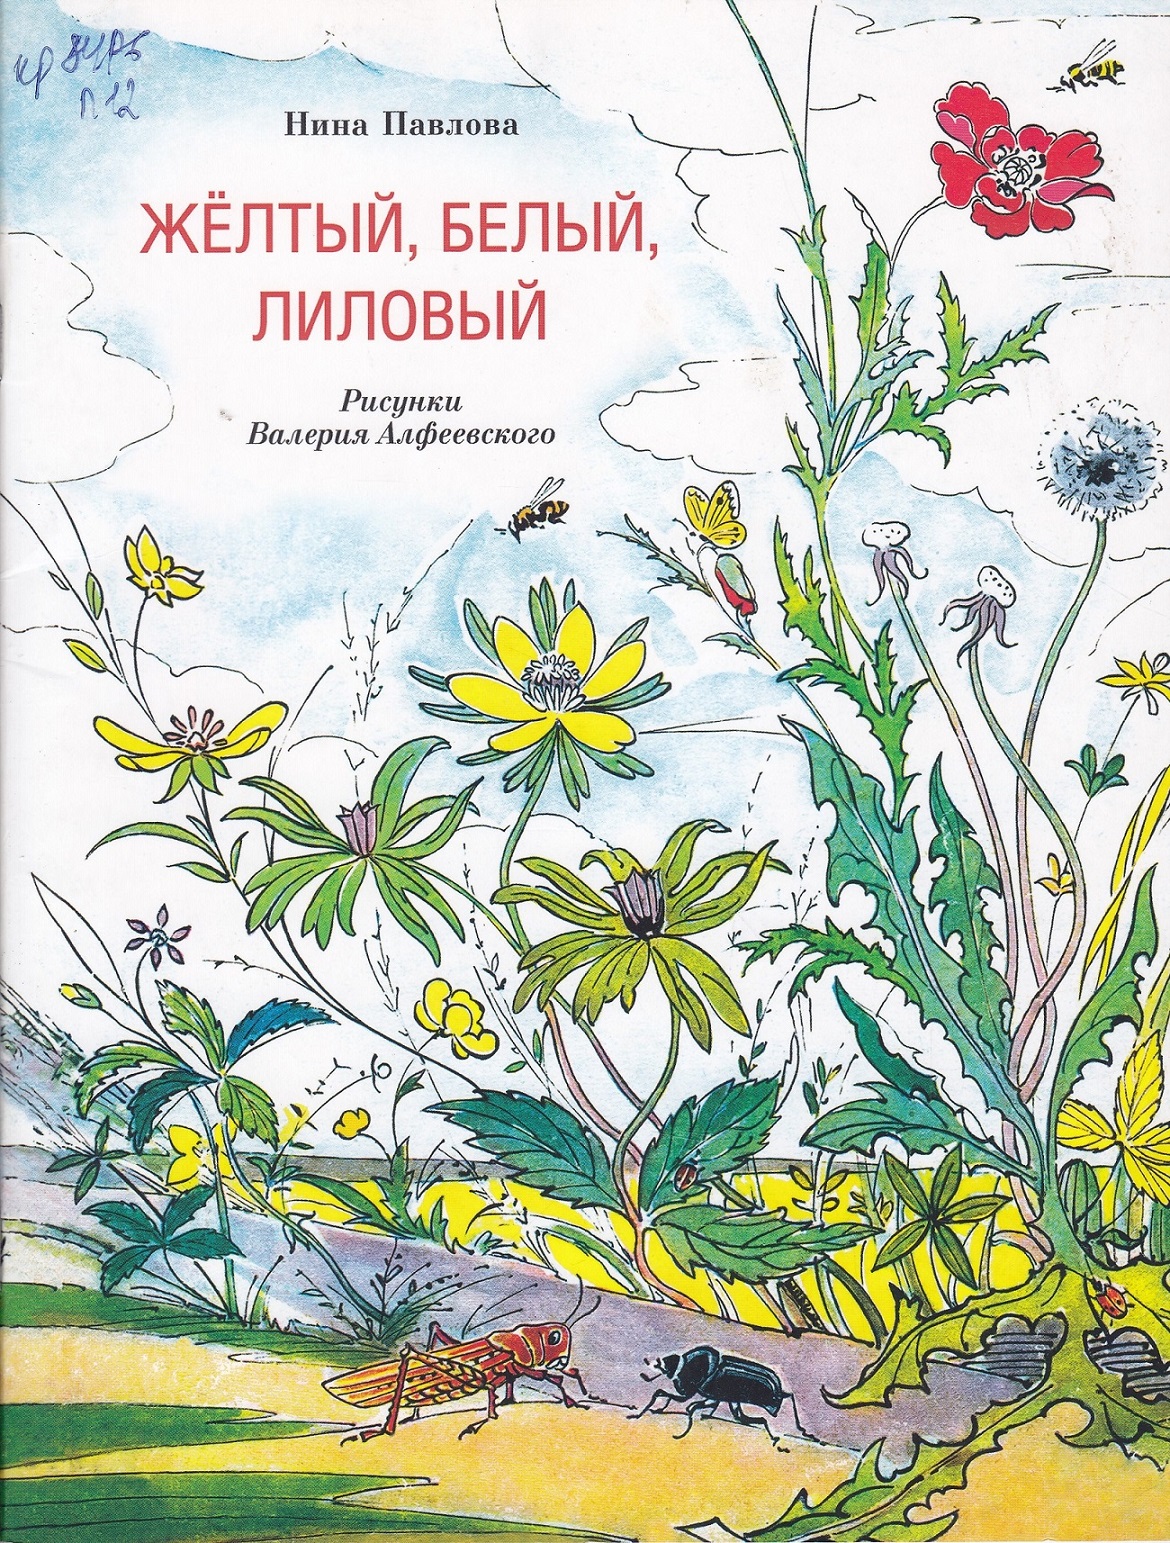 Нажмите для увеличения. Павлова Н. М. Жёлтый, белый, лиловый(фото книги из фонда библиотеки)